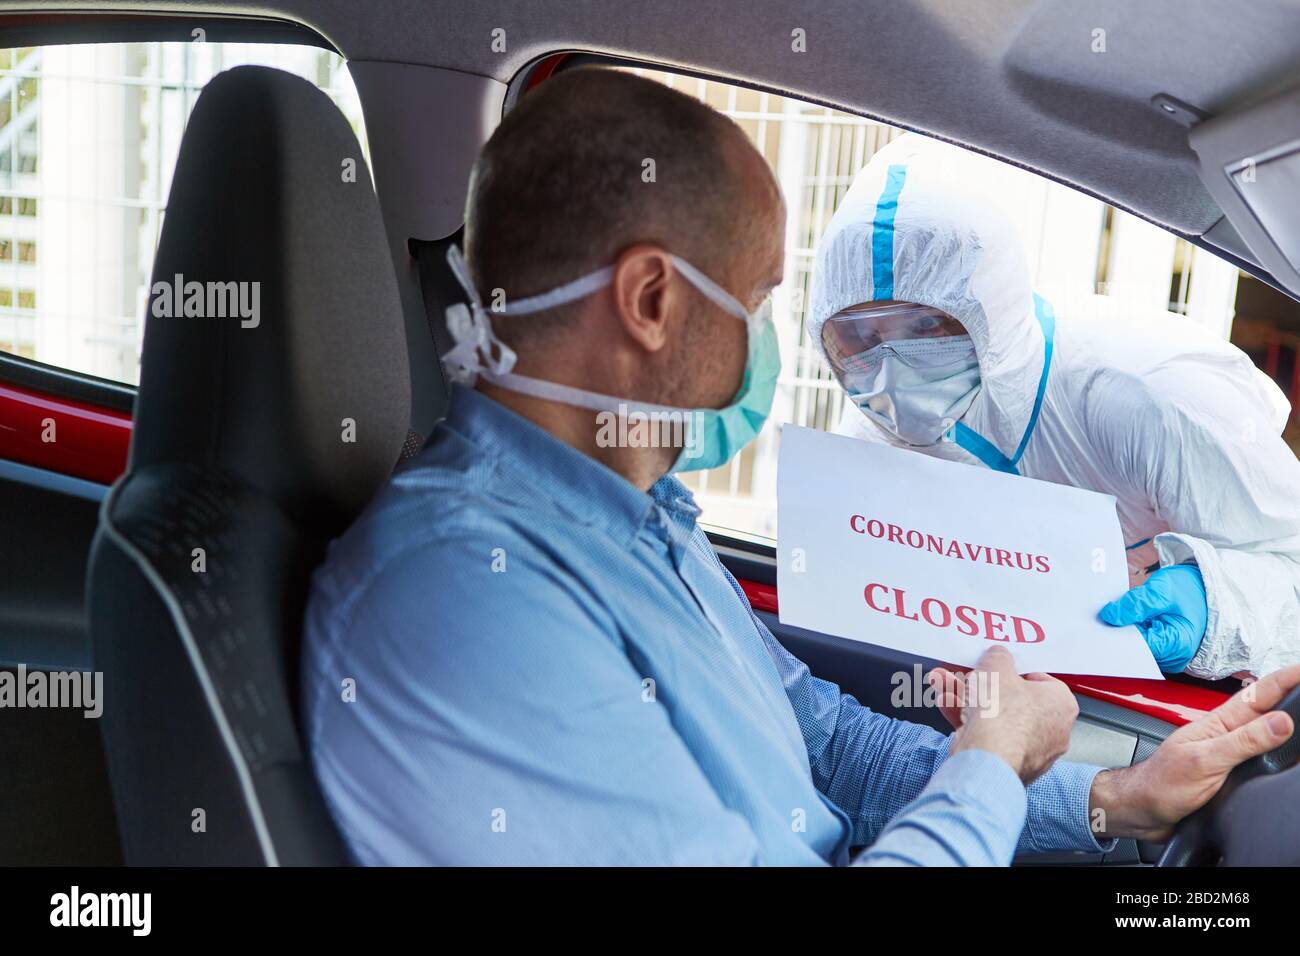 Autofahrer mit Gesichtsmasken werden von Mitarbeitern in Schutzkleidung über Verschlüsse von Coronavirus informiert Stockfoto